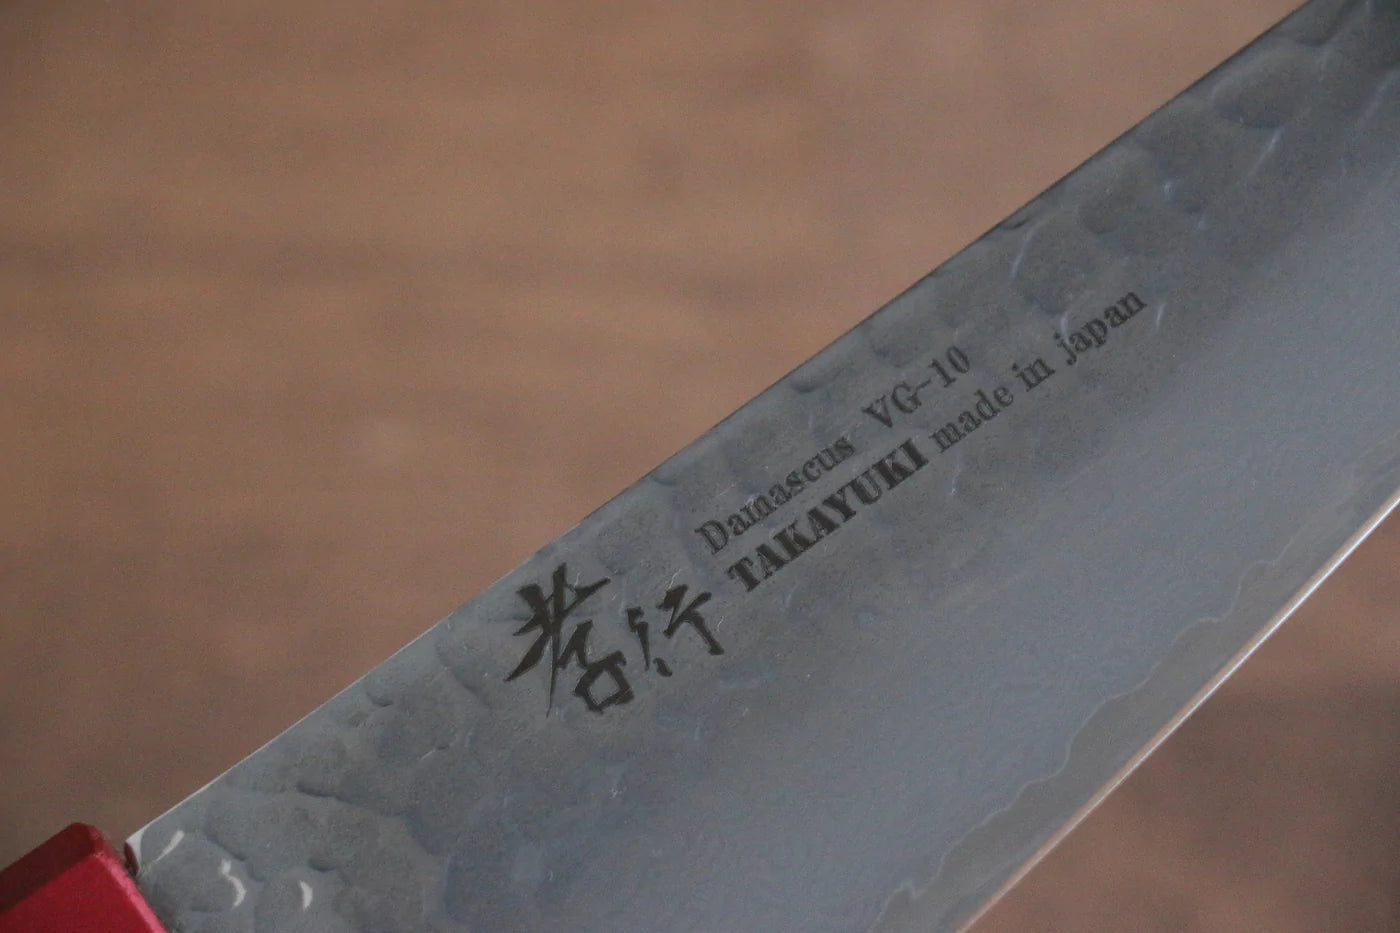 Hochwertiges japanisches Messer - SAKAI TAKAYUKI Sabaki-Messer (Honesuki) VG10-Stahl Damaststahl 33 Lagen 180 mm